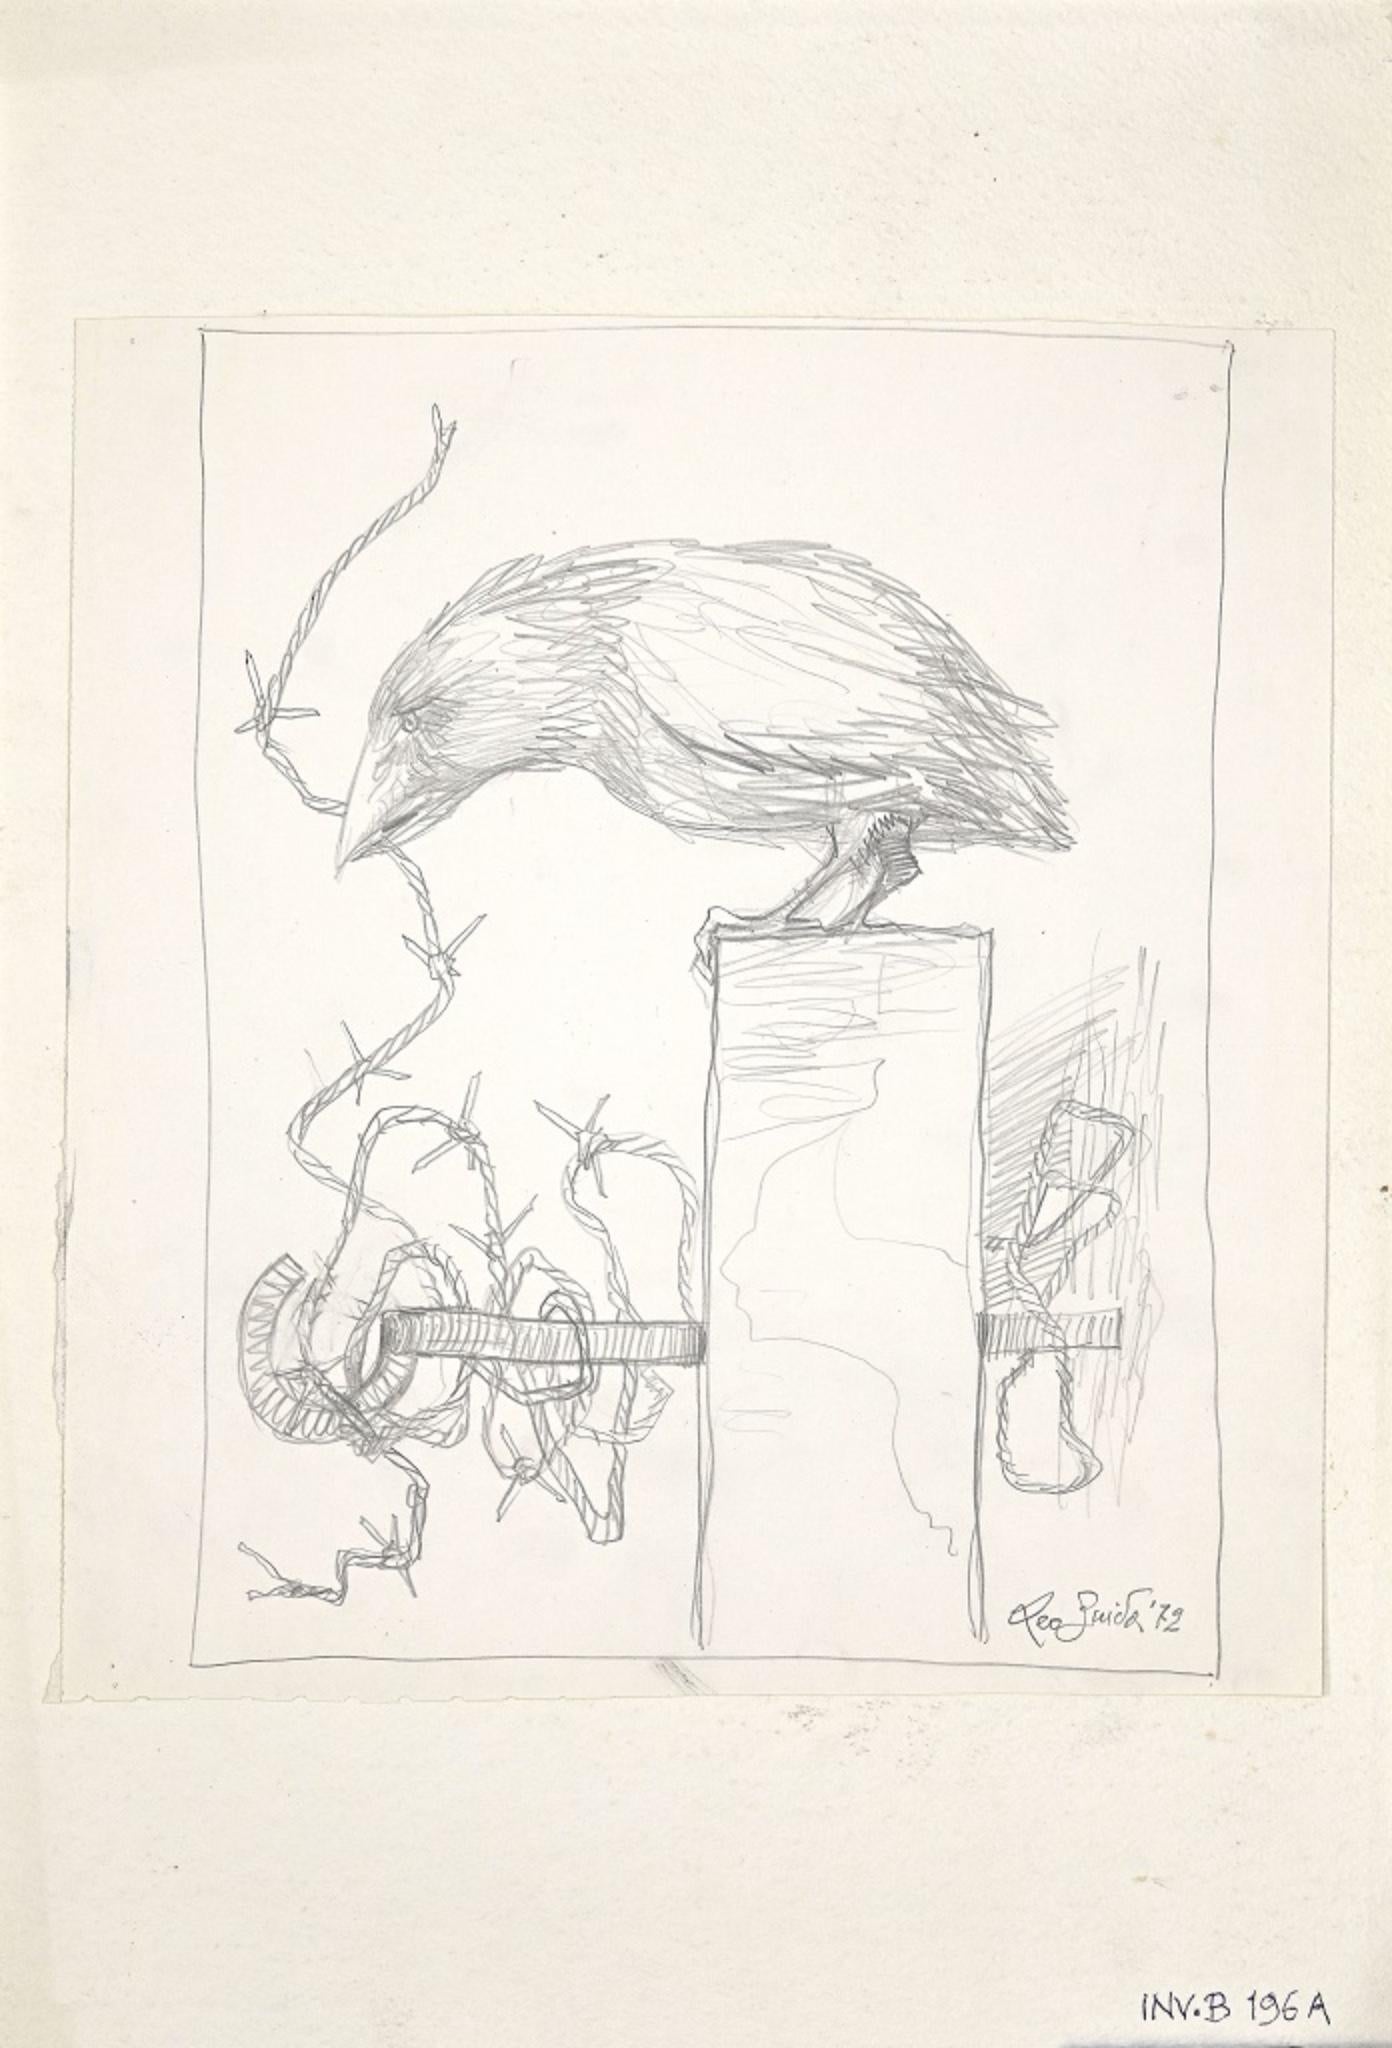 The Crow – Bleistiftzeichnung von Leo Guida – 1972